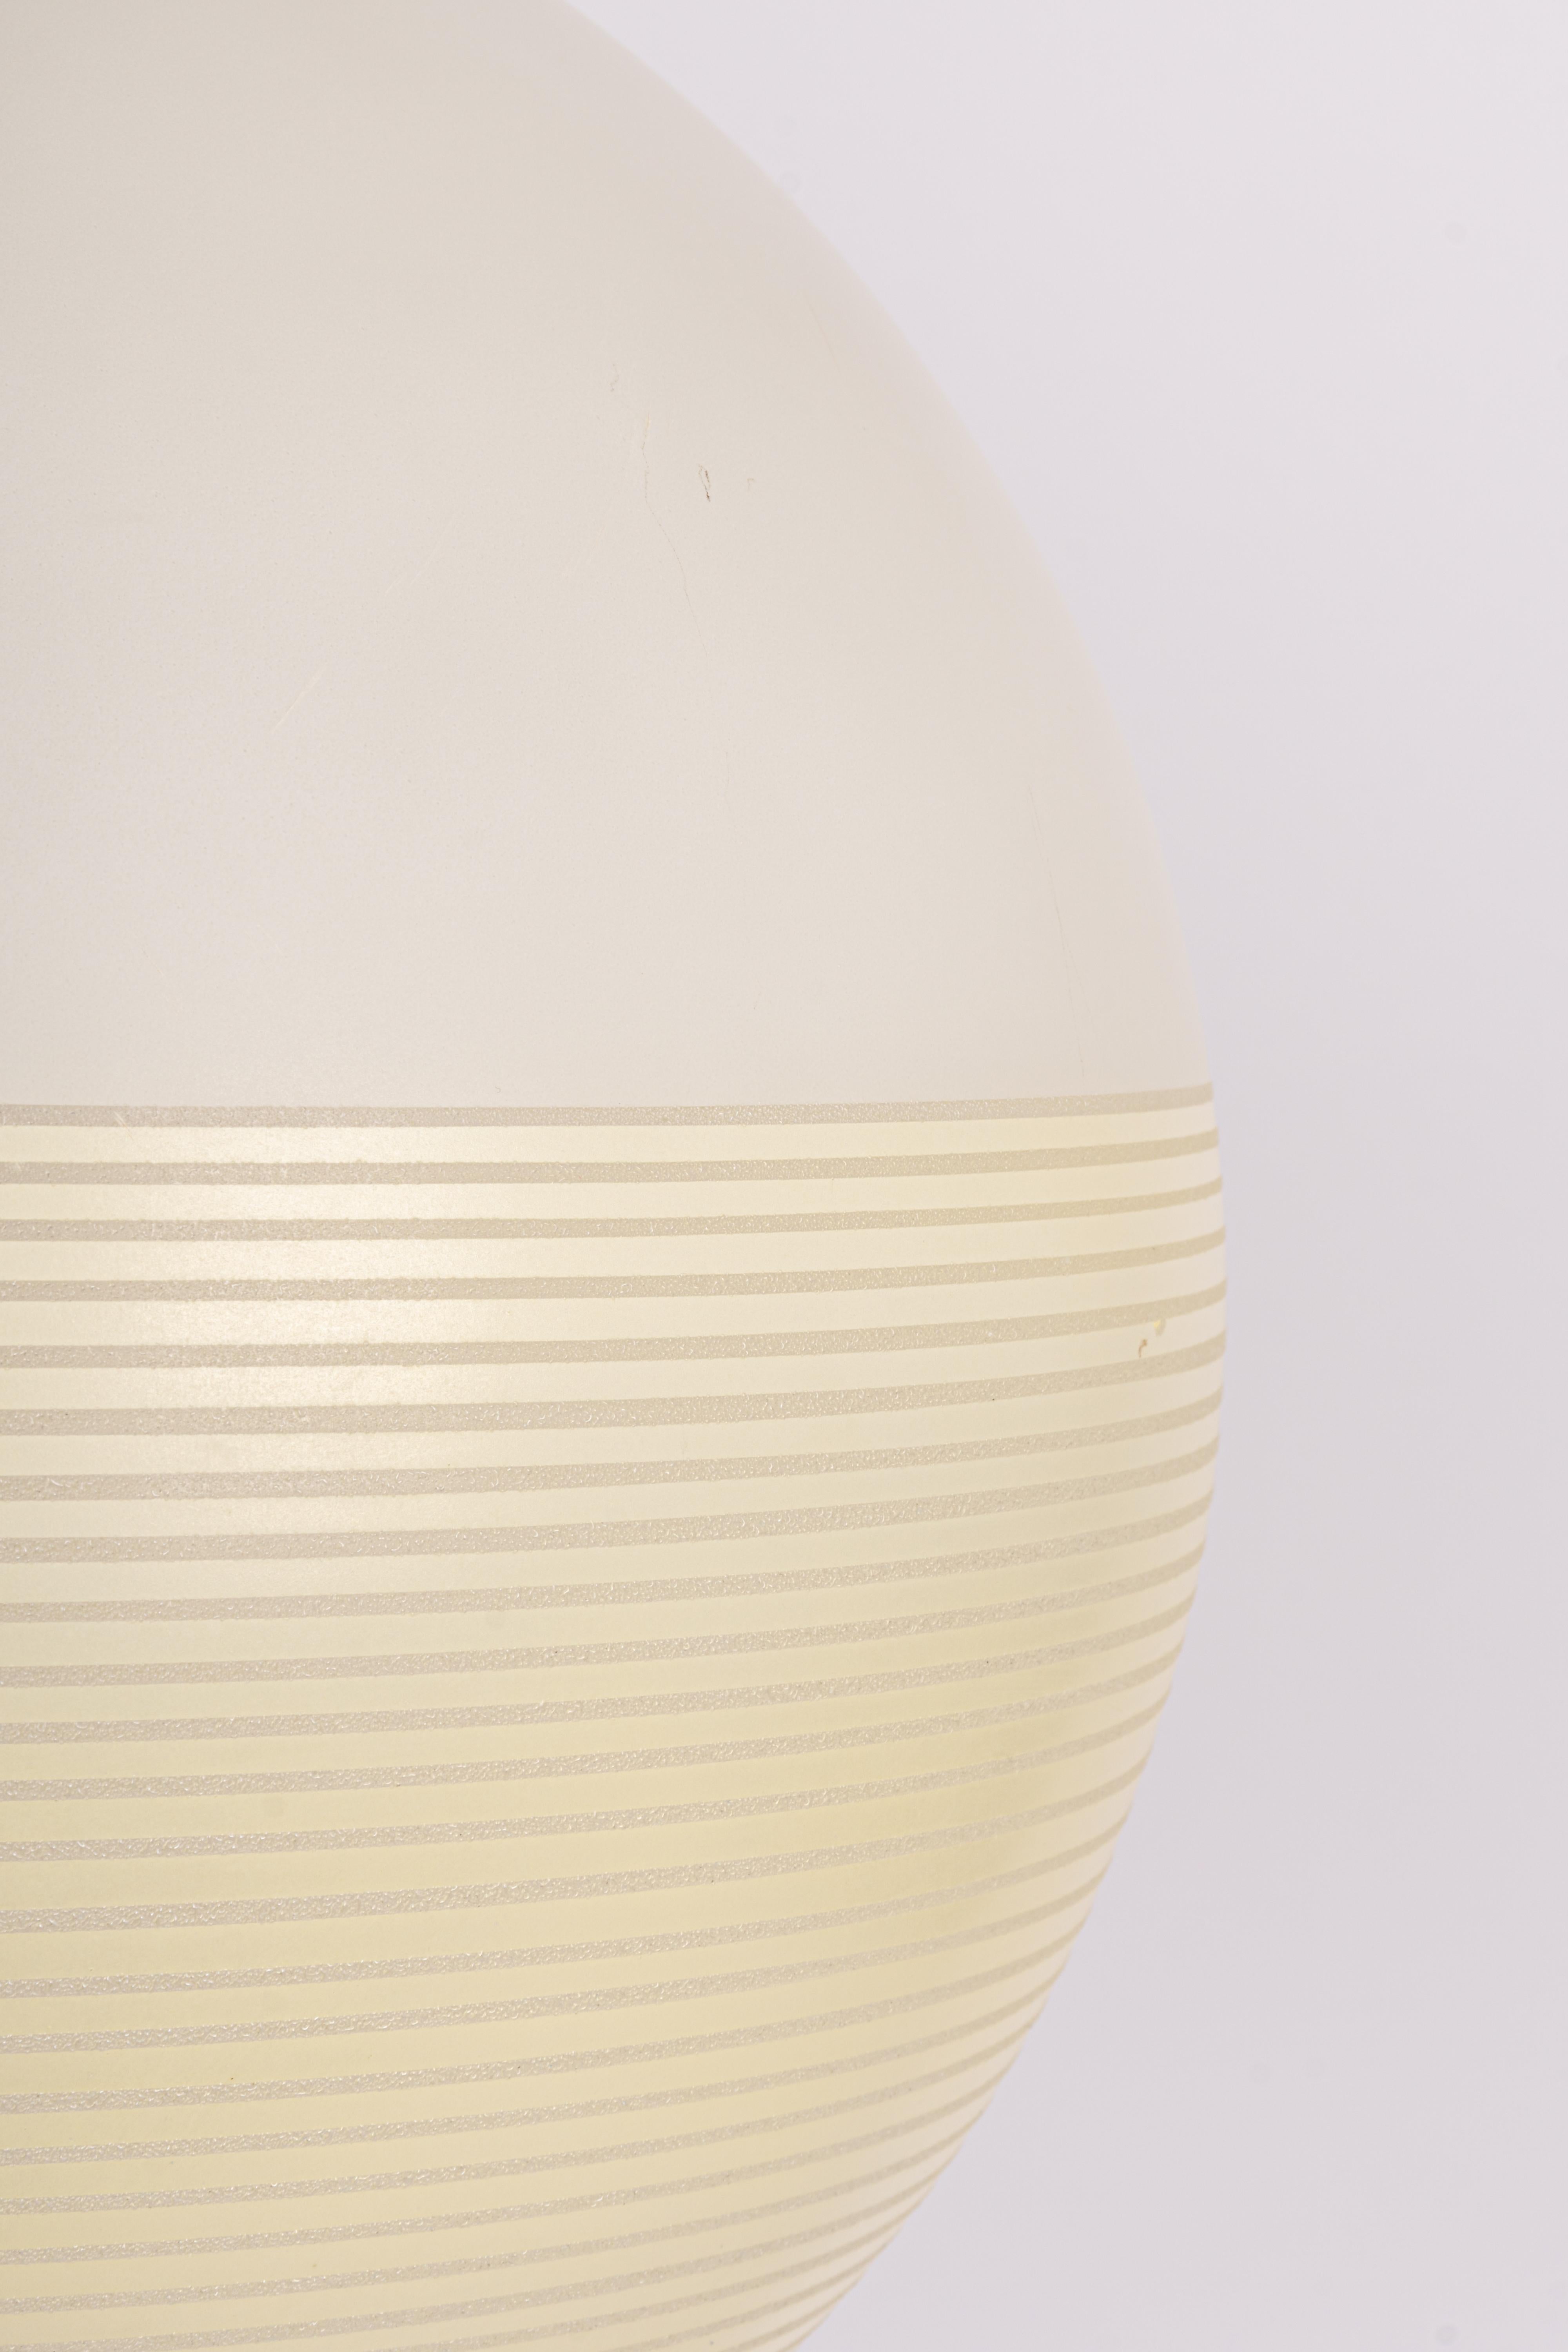 Magnifique lampe suspendue fabriquée par Doria dans les années 1960 en Allemagne.
Il donne un merveilleux effet lumineux lorsqu'il est allumé.
Très bon état. Nettoyé, bien câblé, et prêt à être utilisé. 

Le luminaire nécessite une ampoule